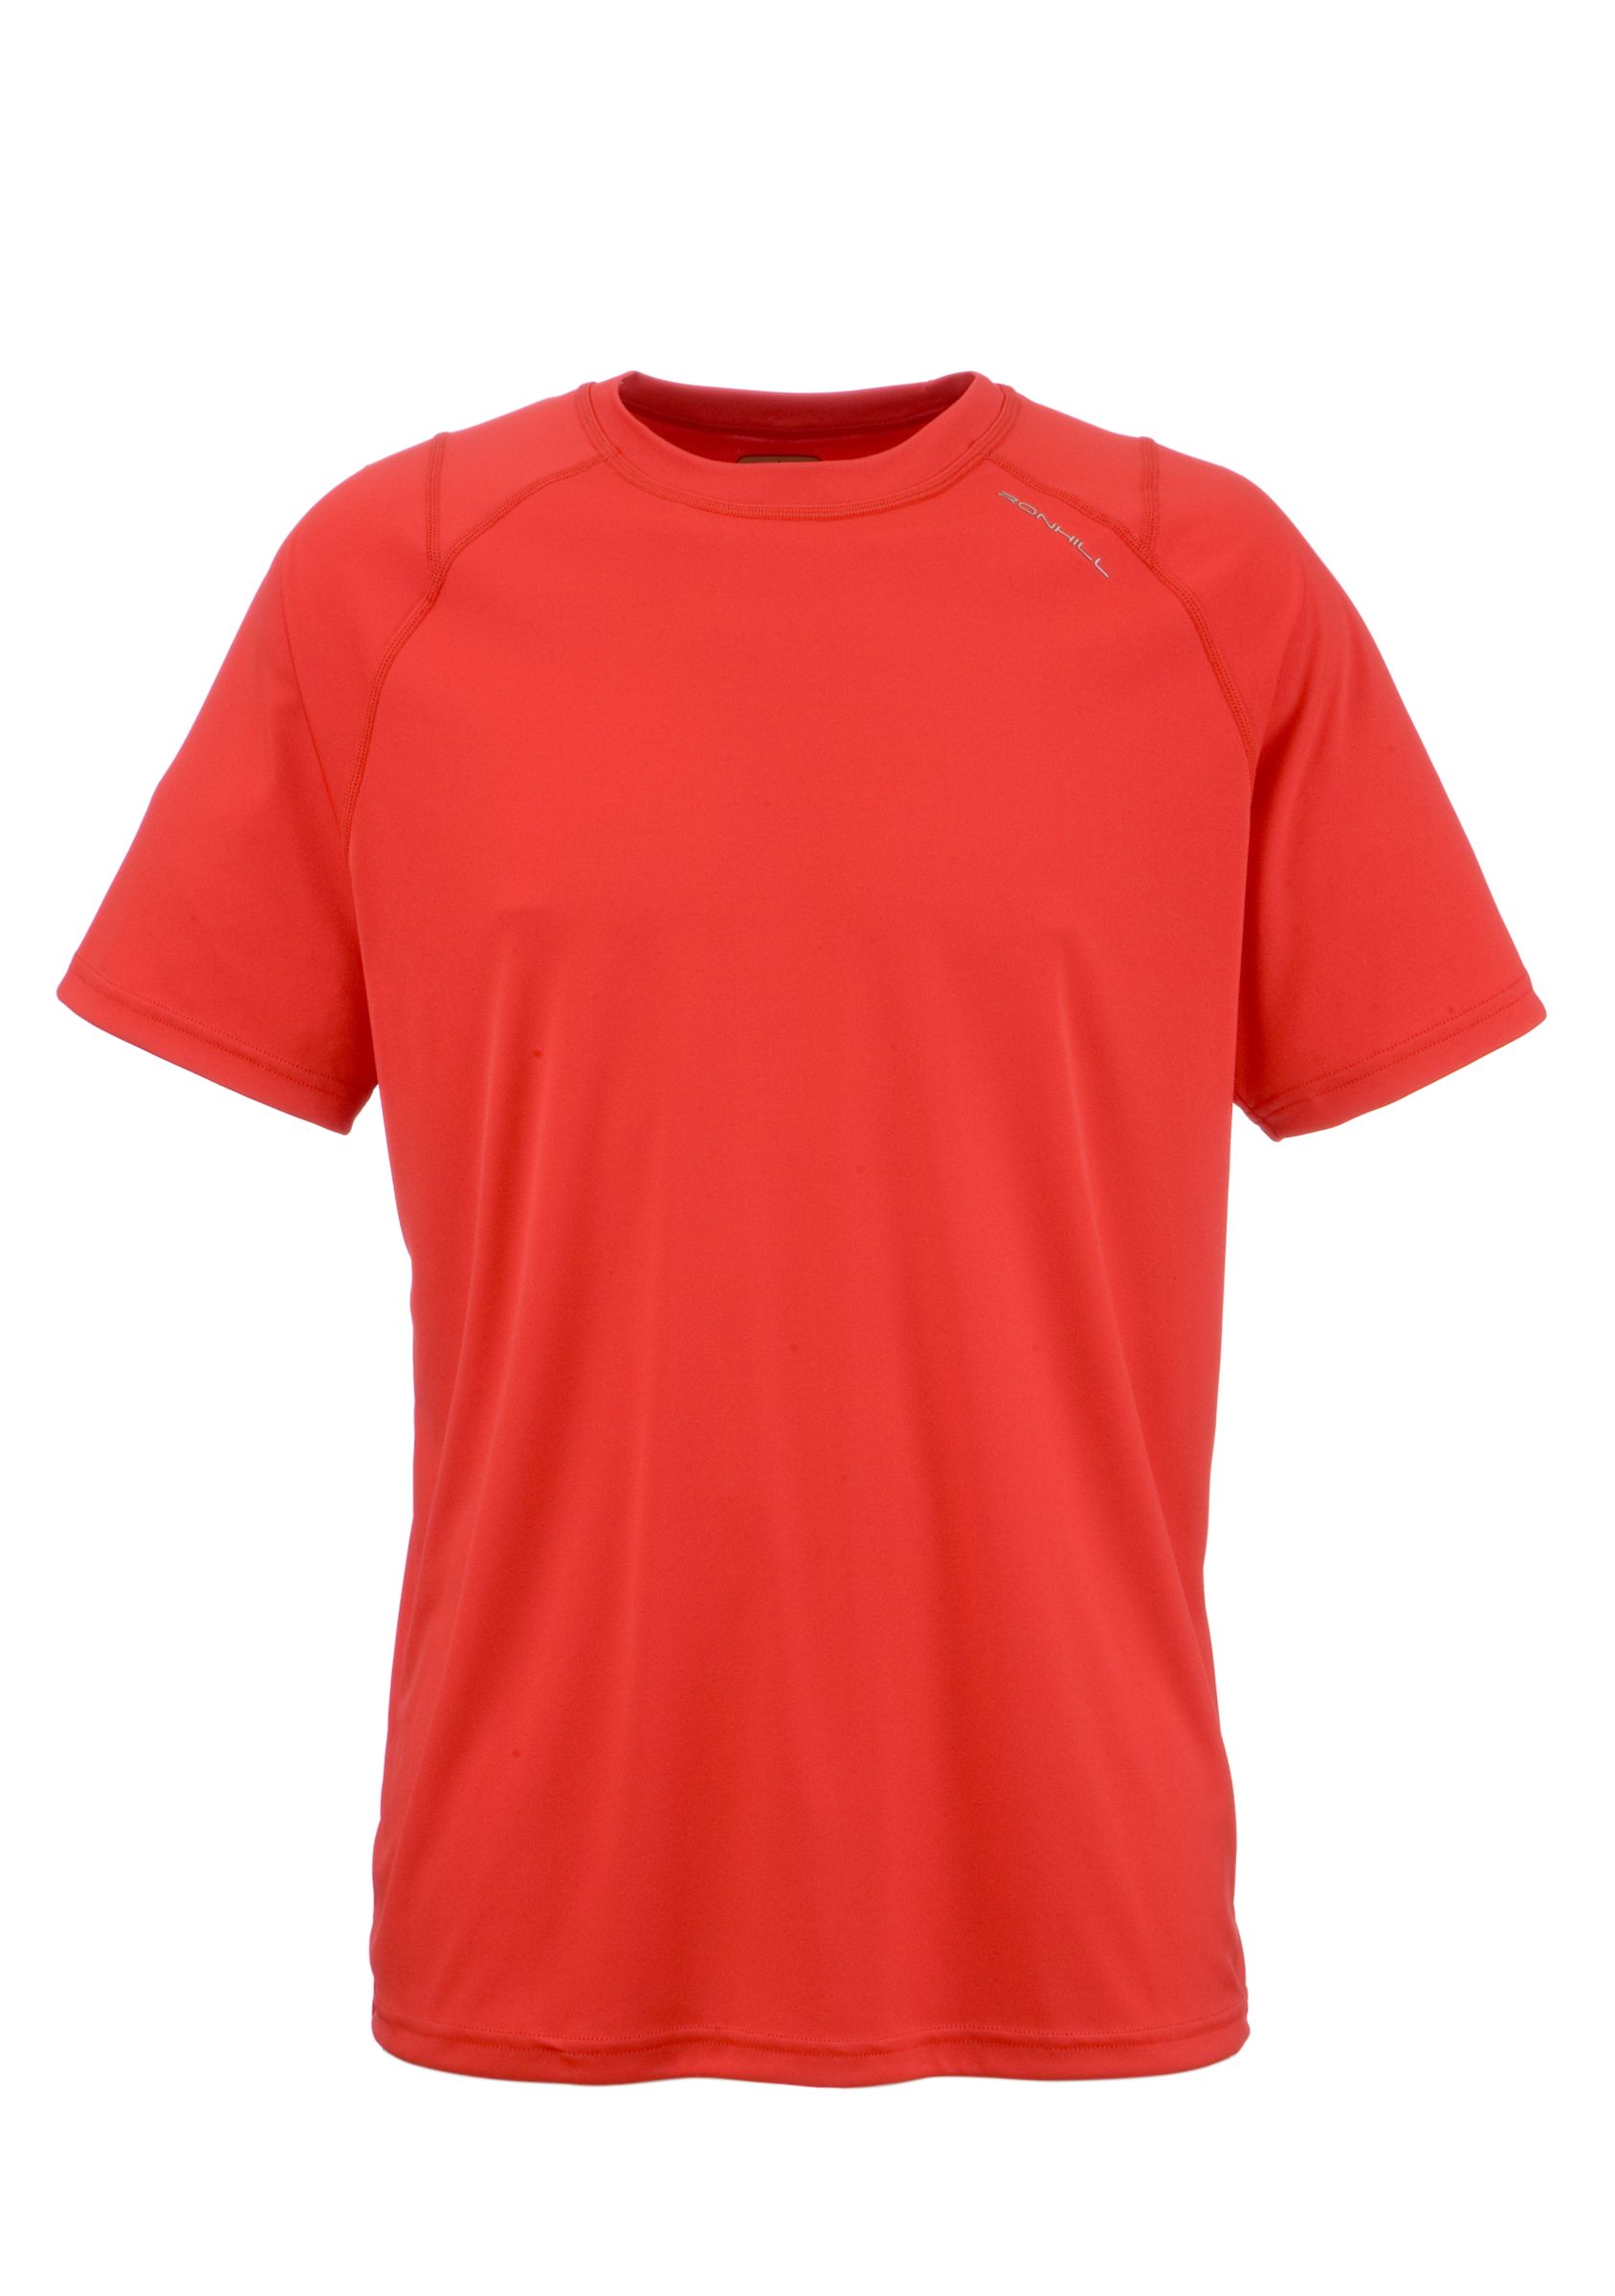 Advance Short Sleeve Pure T-Shirt, Fire